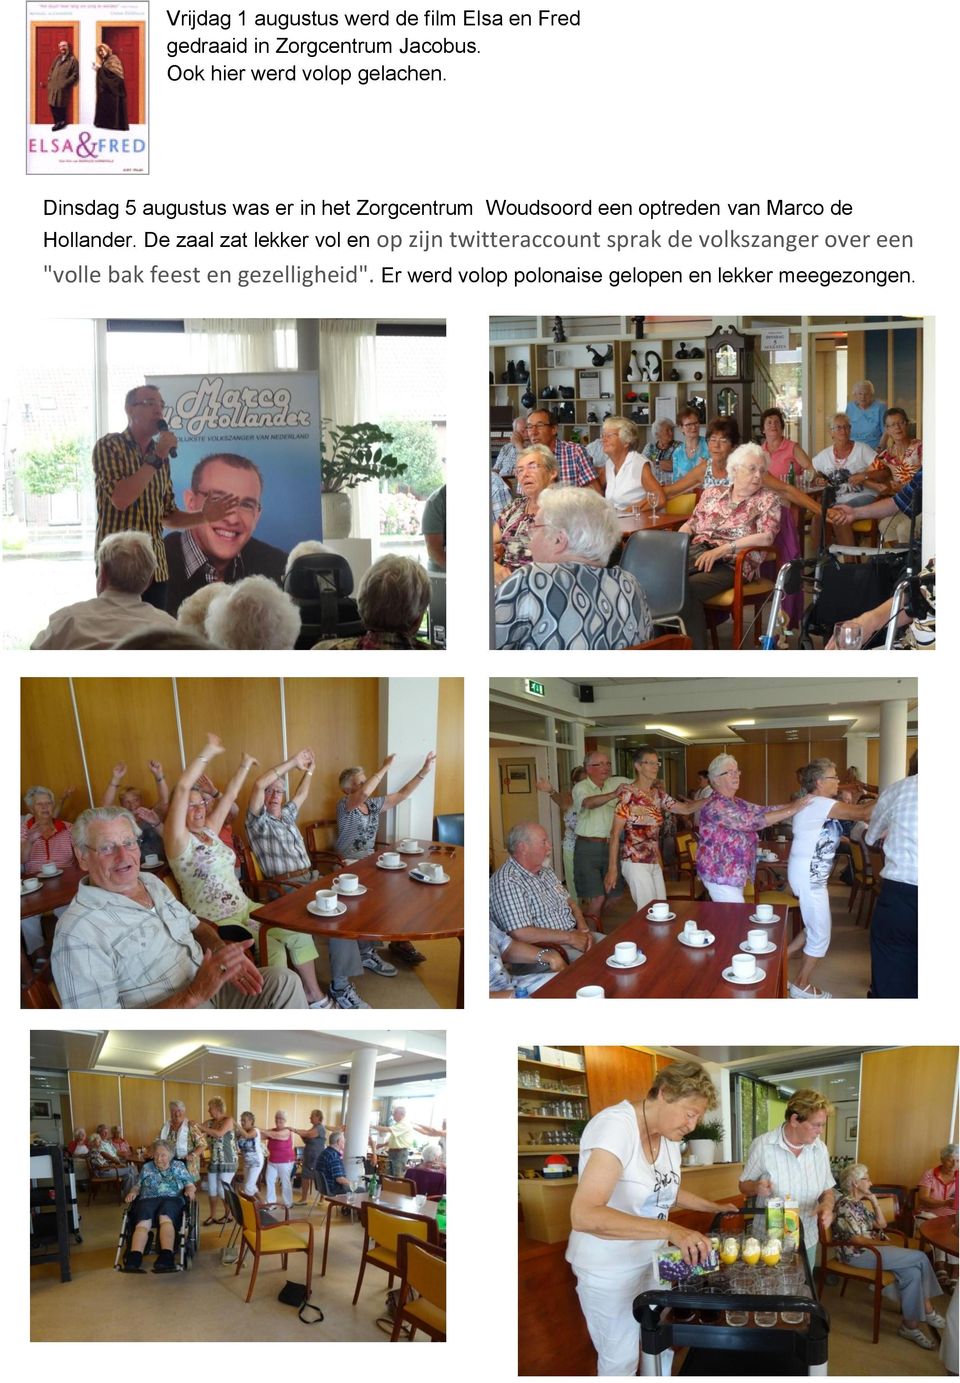 Dinsdag 5 augustus was er in het Zorgcentrum Woudsoord een optreden van Marco de Hollander.